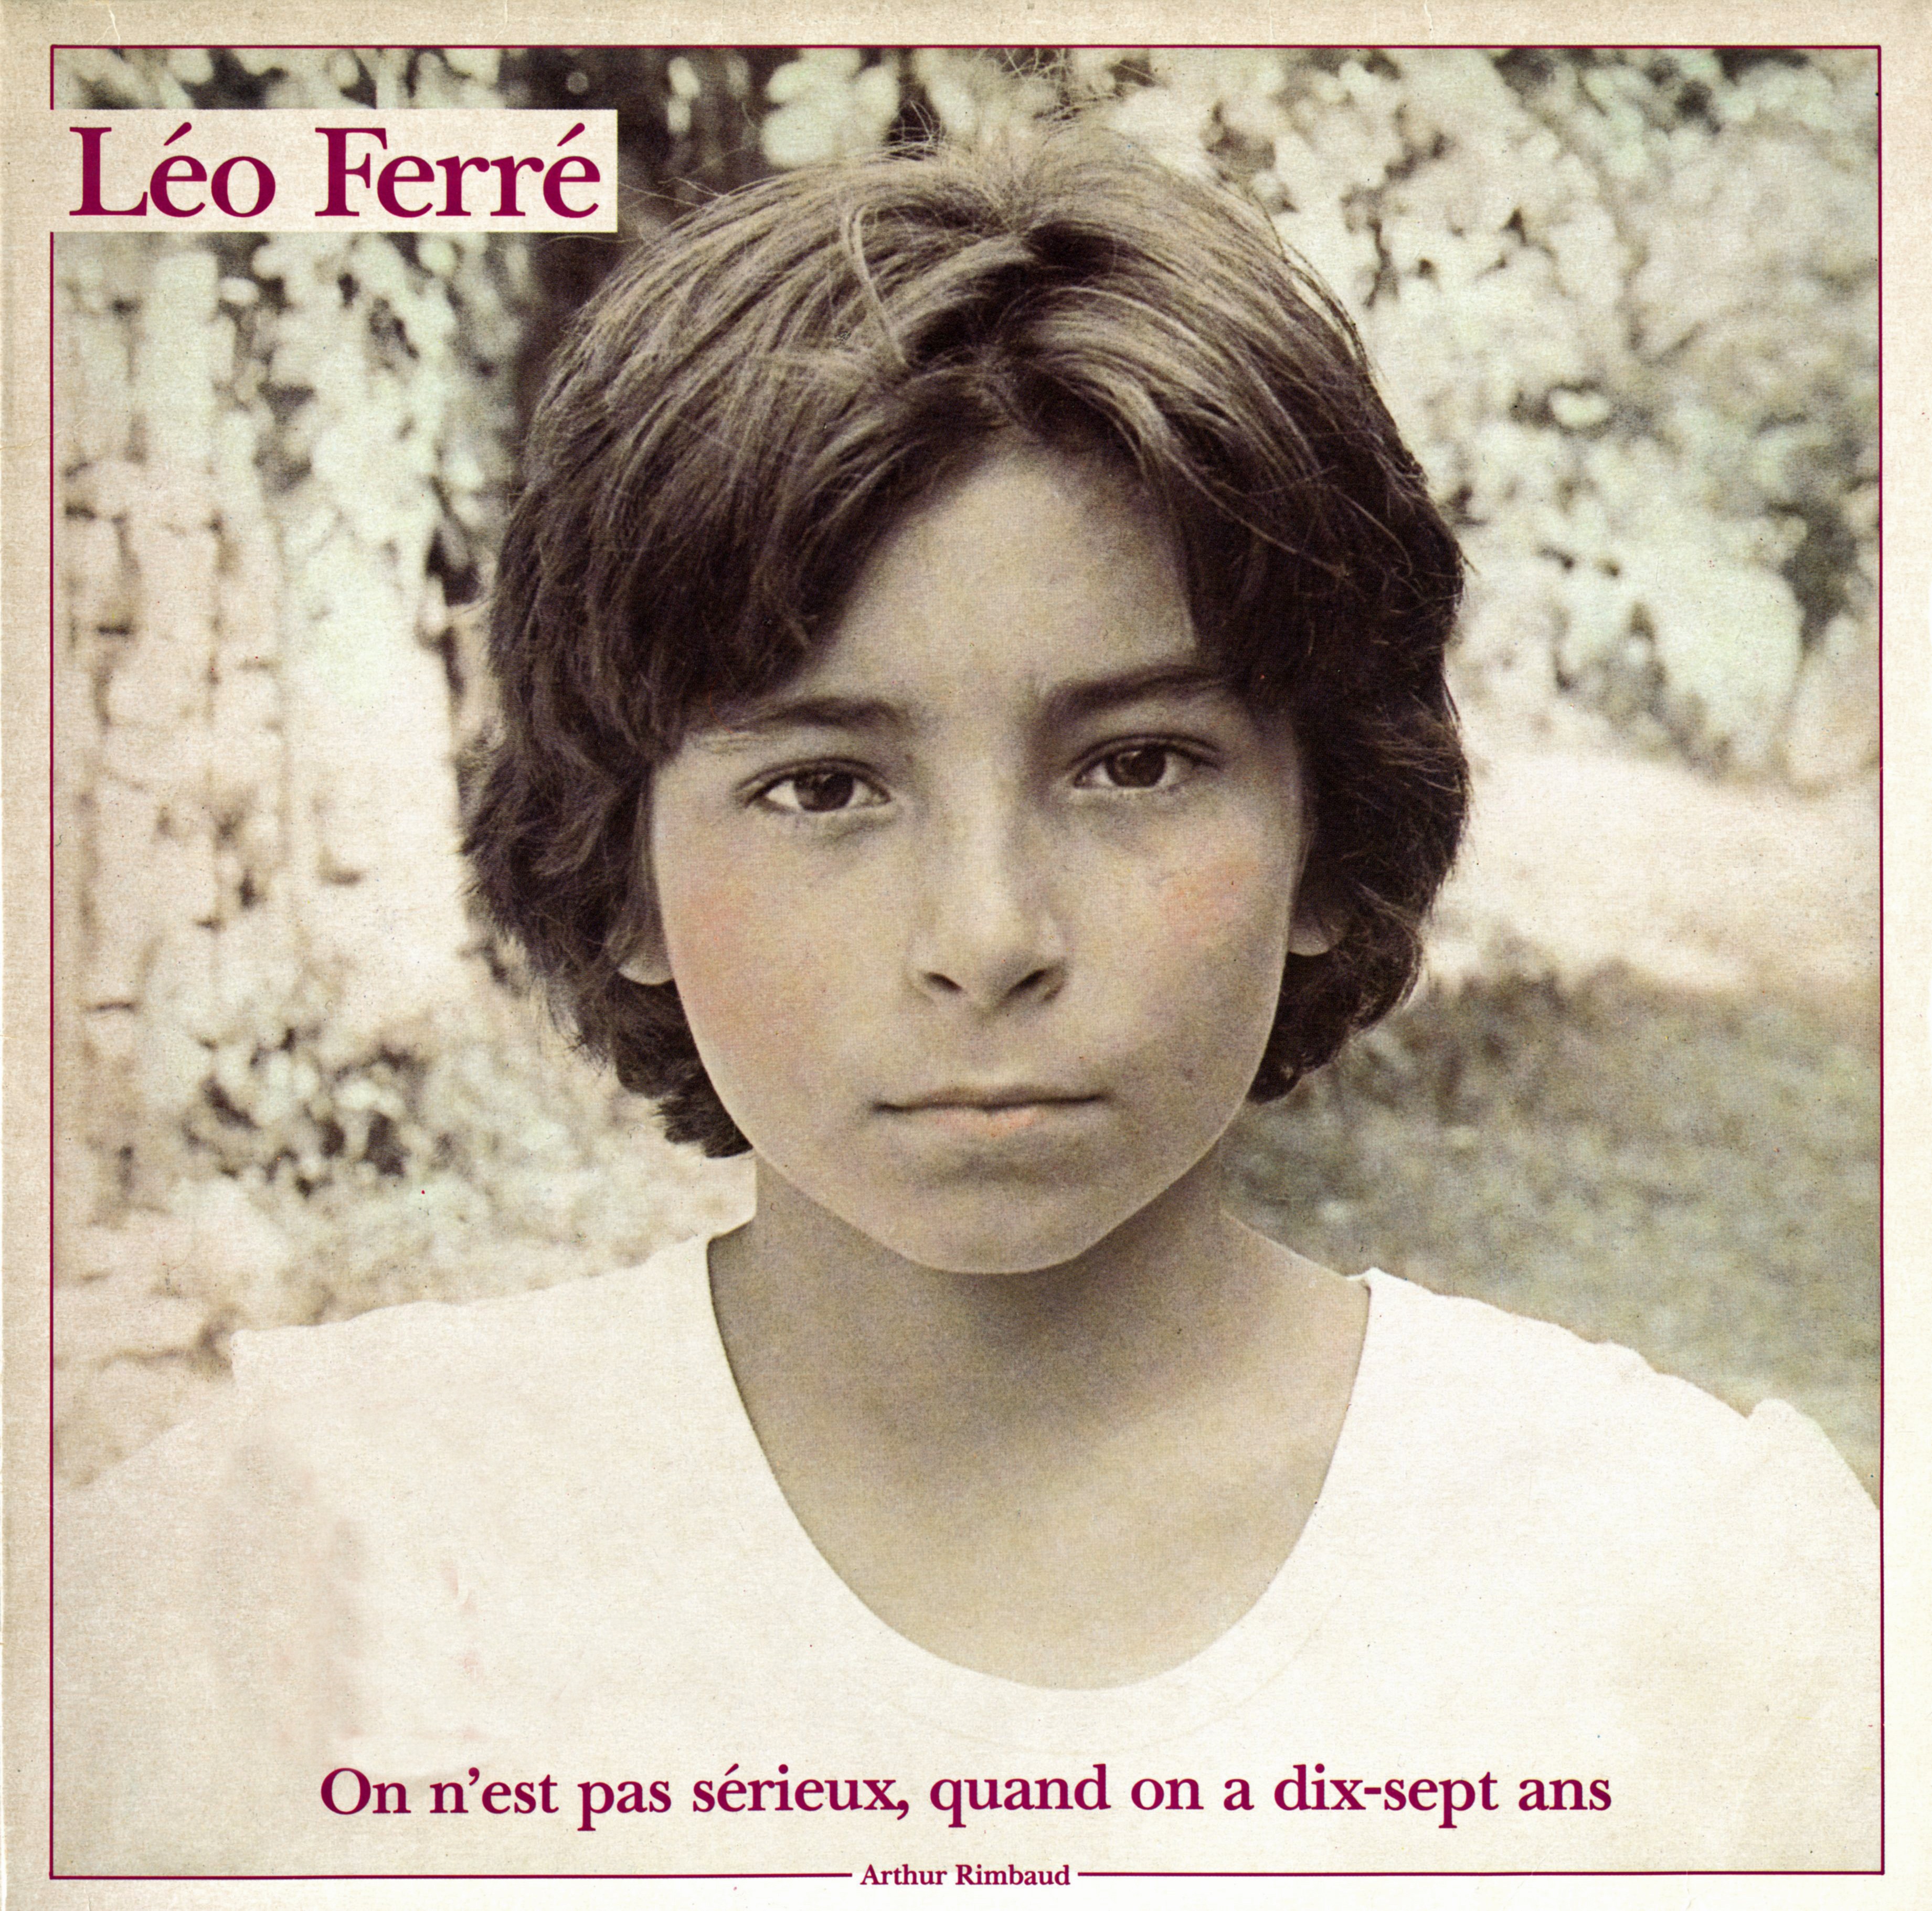 Léo Ferré - On n'est pas sérieux quand on a dix-sept ans, EPM FDD21017 Double album